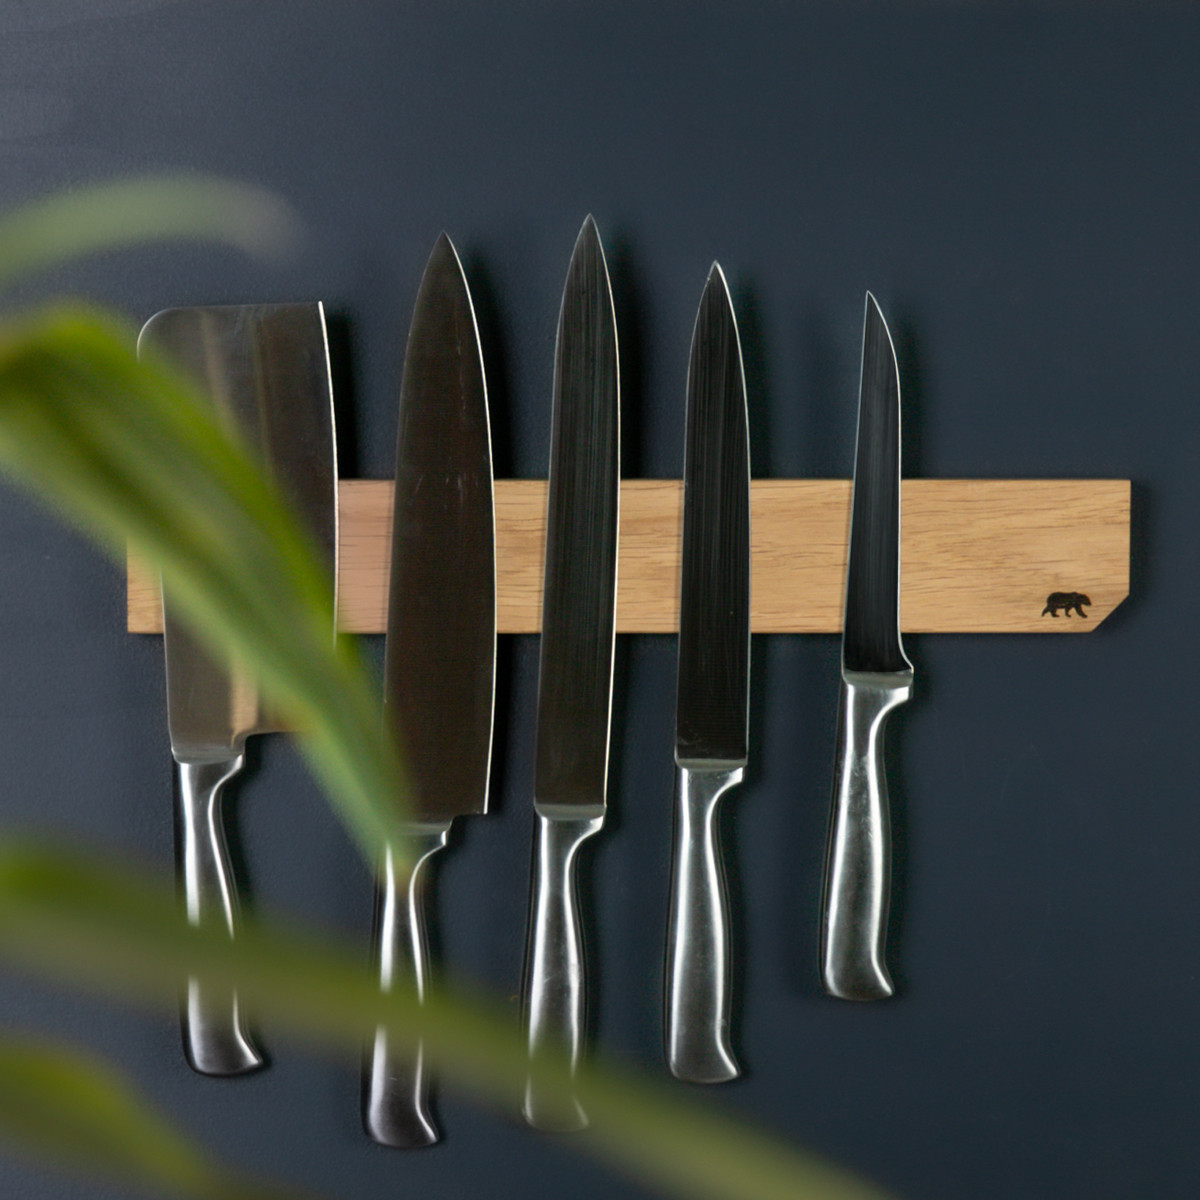 Barre porte-couteaux aimantée en bois